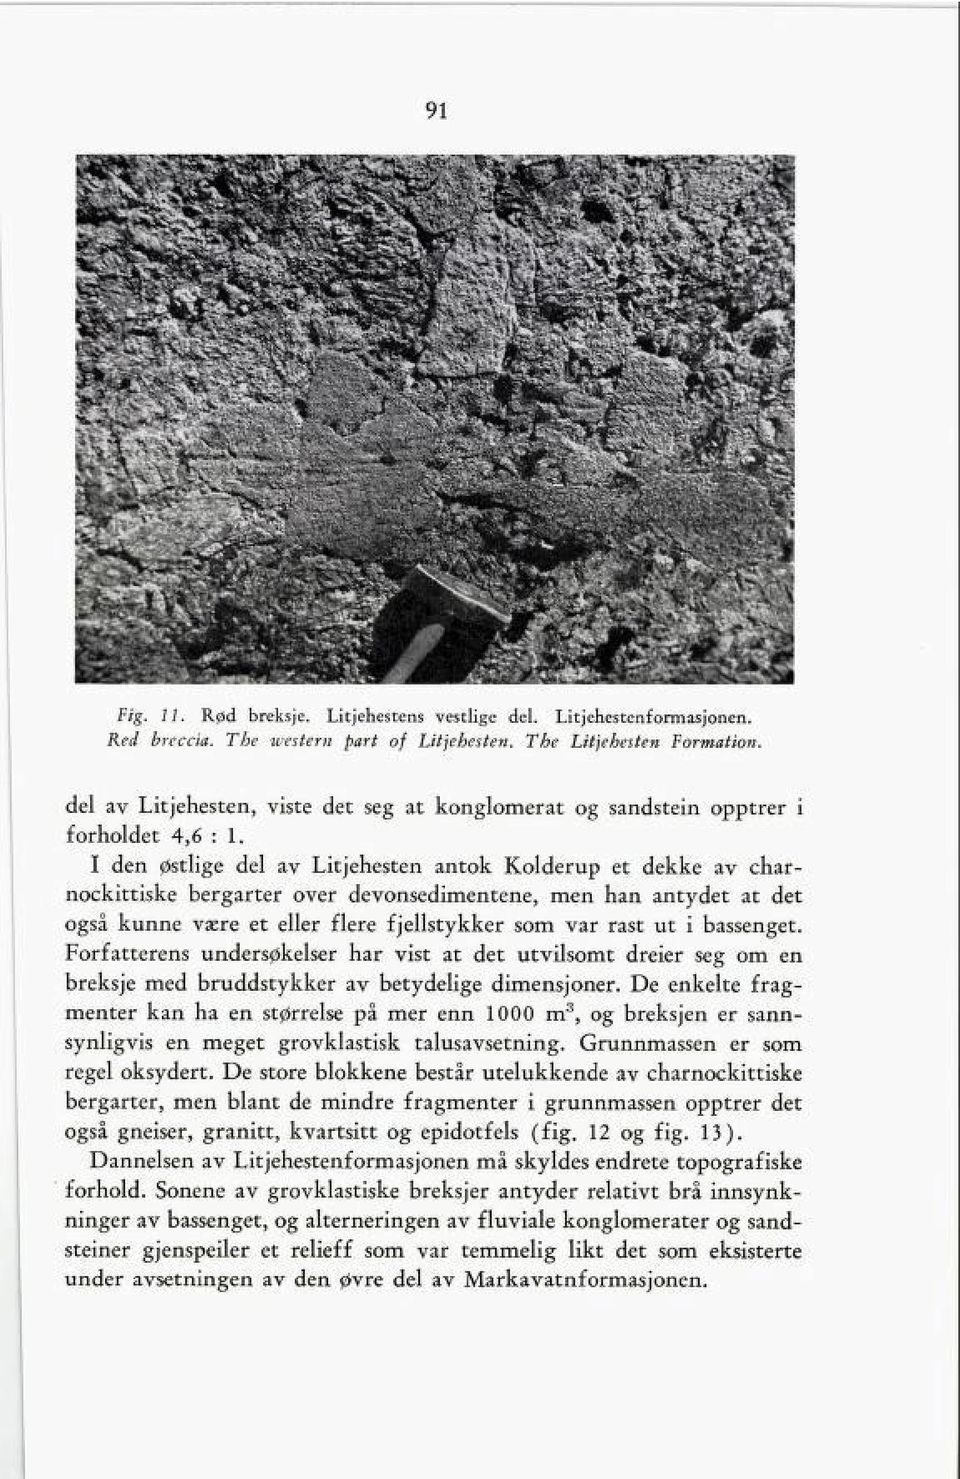 I den østlige del av Litjehesten antok Kolderup et dekke av char nockittiske bergarter over devonsedimentene, men han antydet at det også kunne være et eller flere fjellstykker som var rast ut i